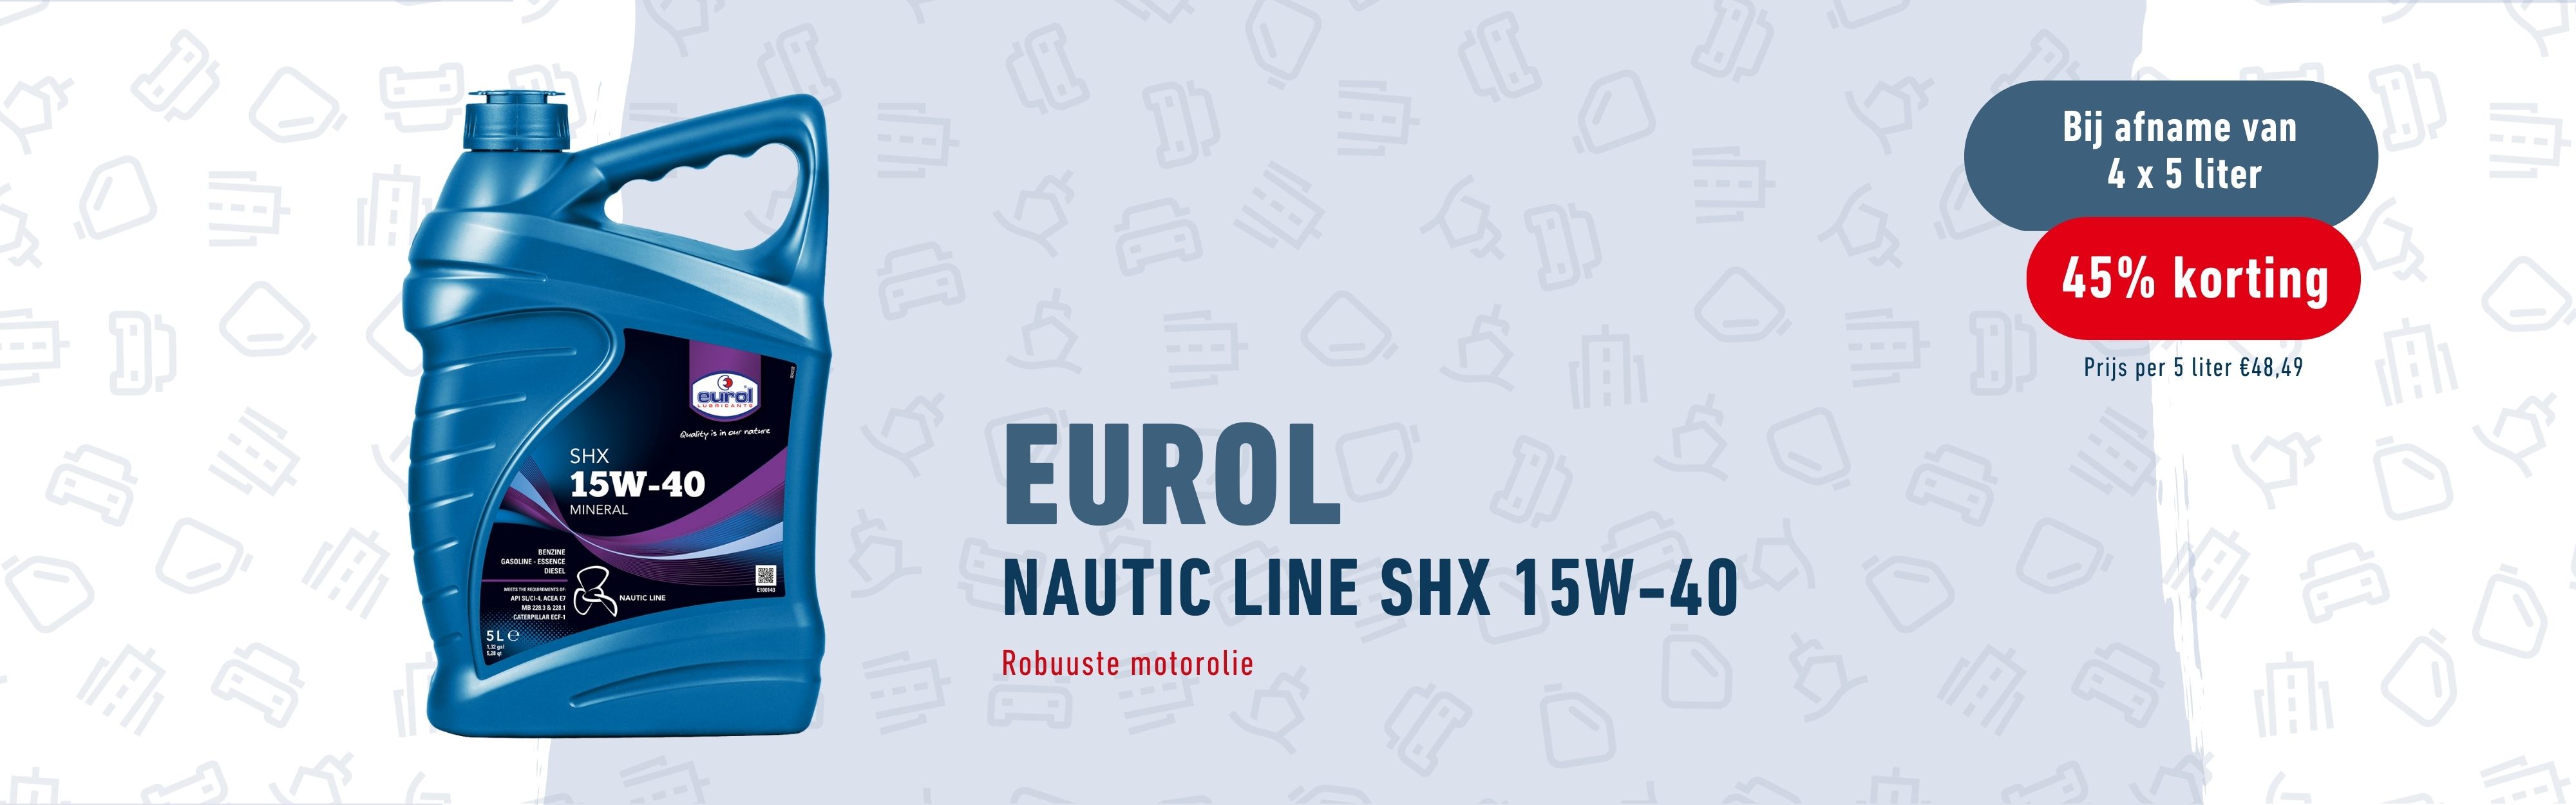 Eurol Nautic Line SHX 15W-40Eurol Nautic Line SHX 15W-40